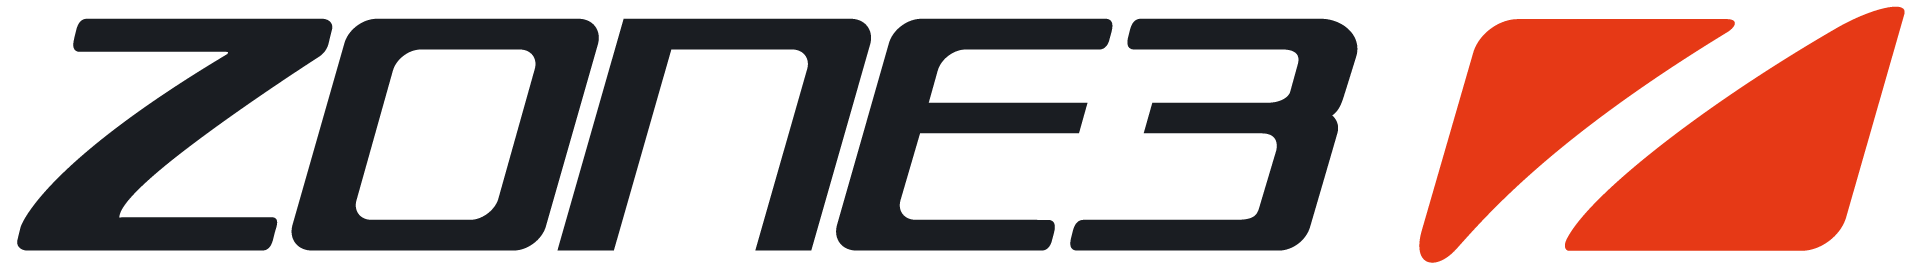 Zone3 logo